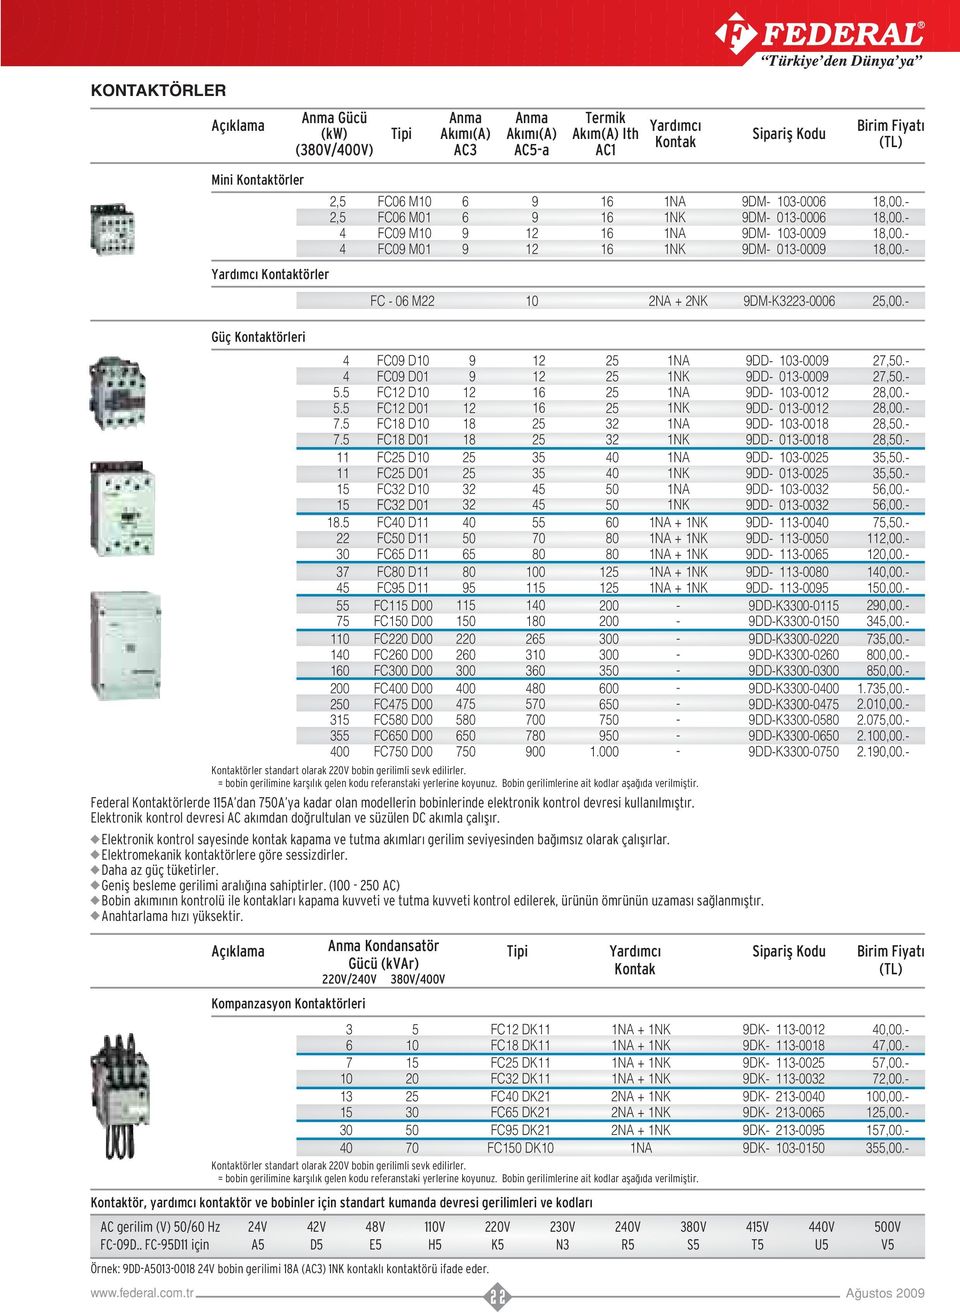 Kompanzasyon Kontaktörleri 6 7 0 40 5 0 70 Örnek: 9DDA008 V bobin gerilimi 8A (AC) NK kontakl kontaktörü ifade eder.